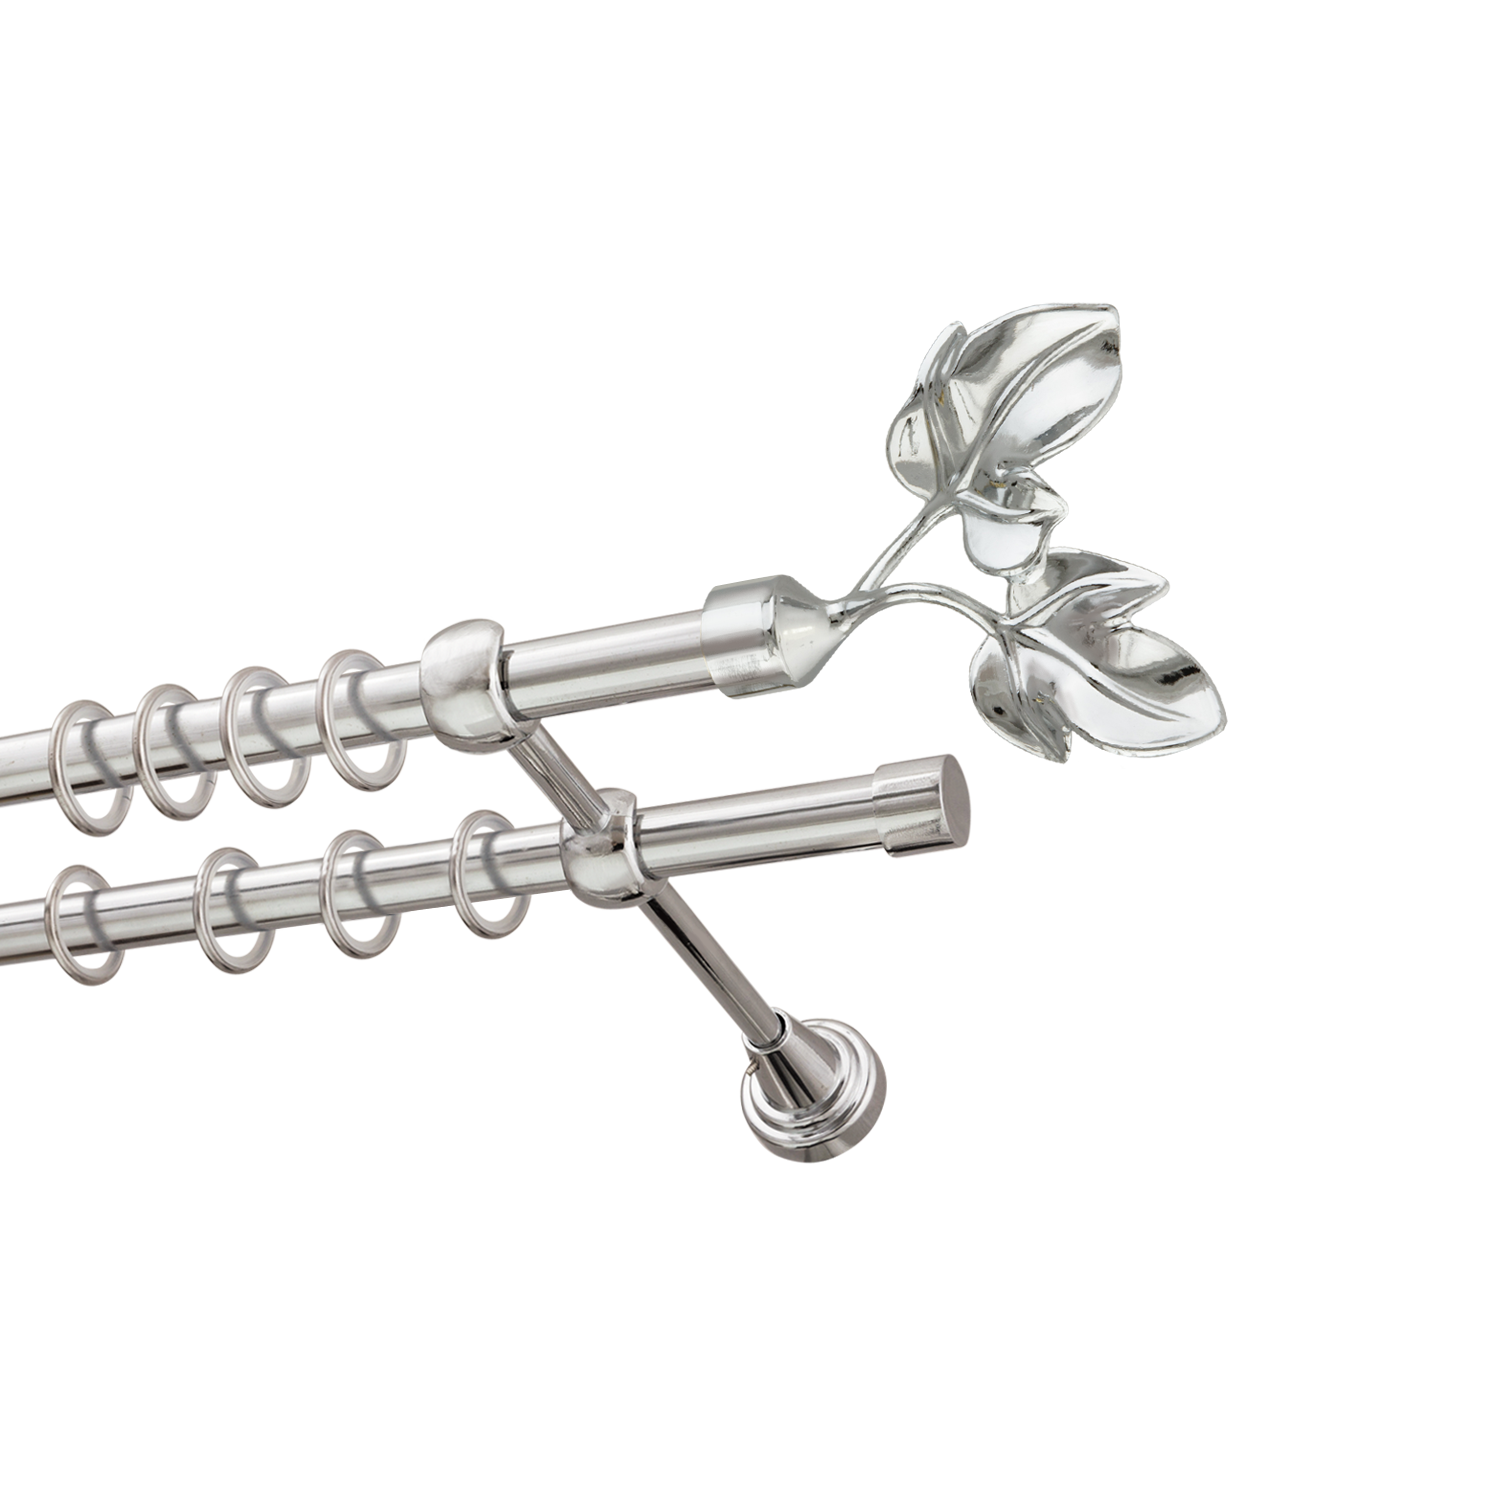 Металлический карниз для штор Листья, двухрядный 16/16 мм, серебро, гладкая штанга, длина 300 см - фото Wikidecor.ru